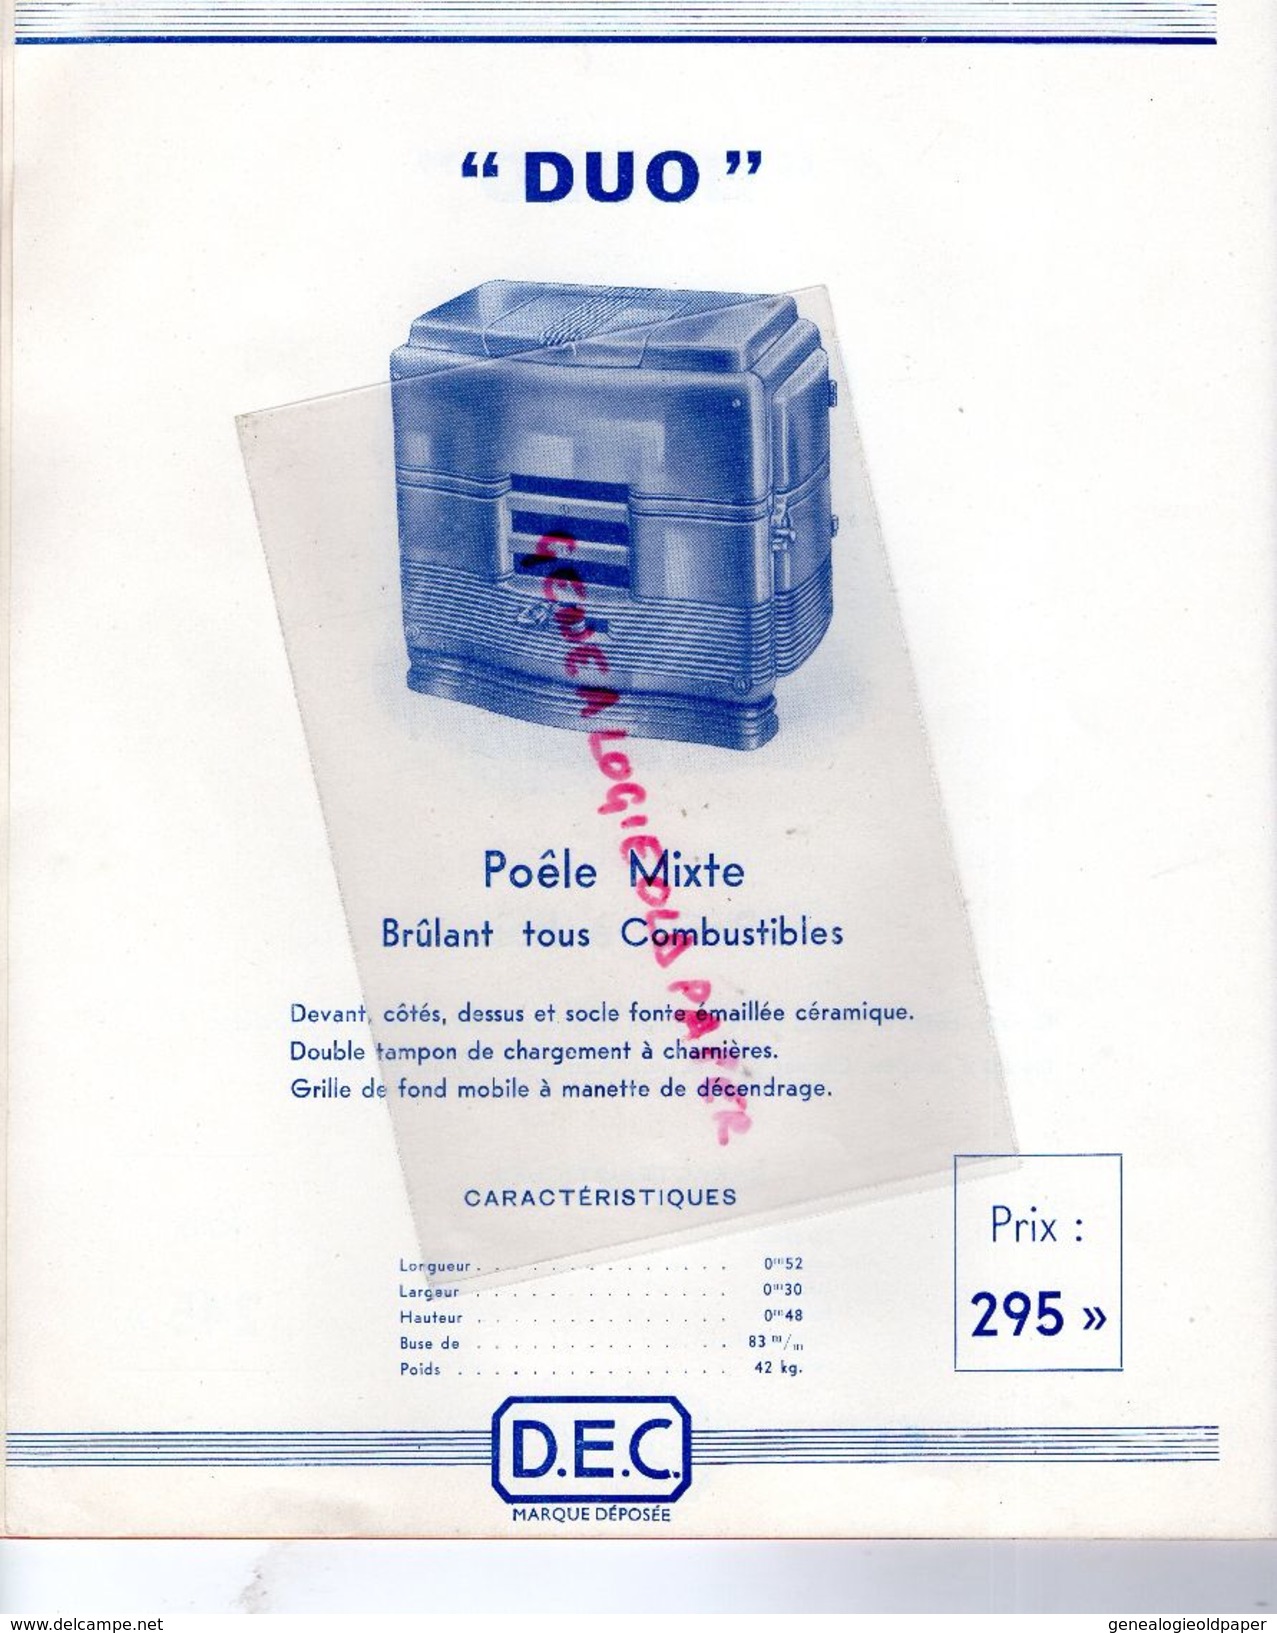 37- TOURS- PARIS- BORDEAUX-LYON-NANTES-REIMS- RARE CATALOGUE DAVUM 1937- CHAUFFAGE -96 RUE AMELOT-D.A.V.U.M.-POELE BOIS - Artesanos